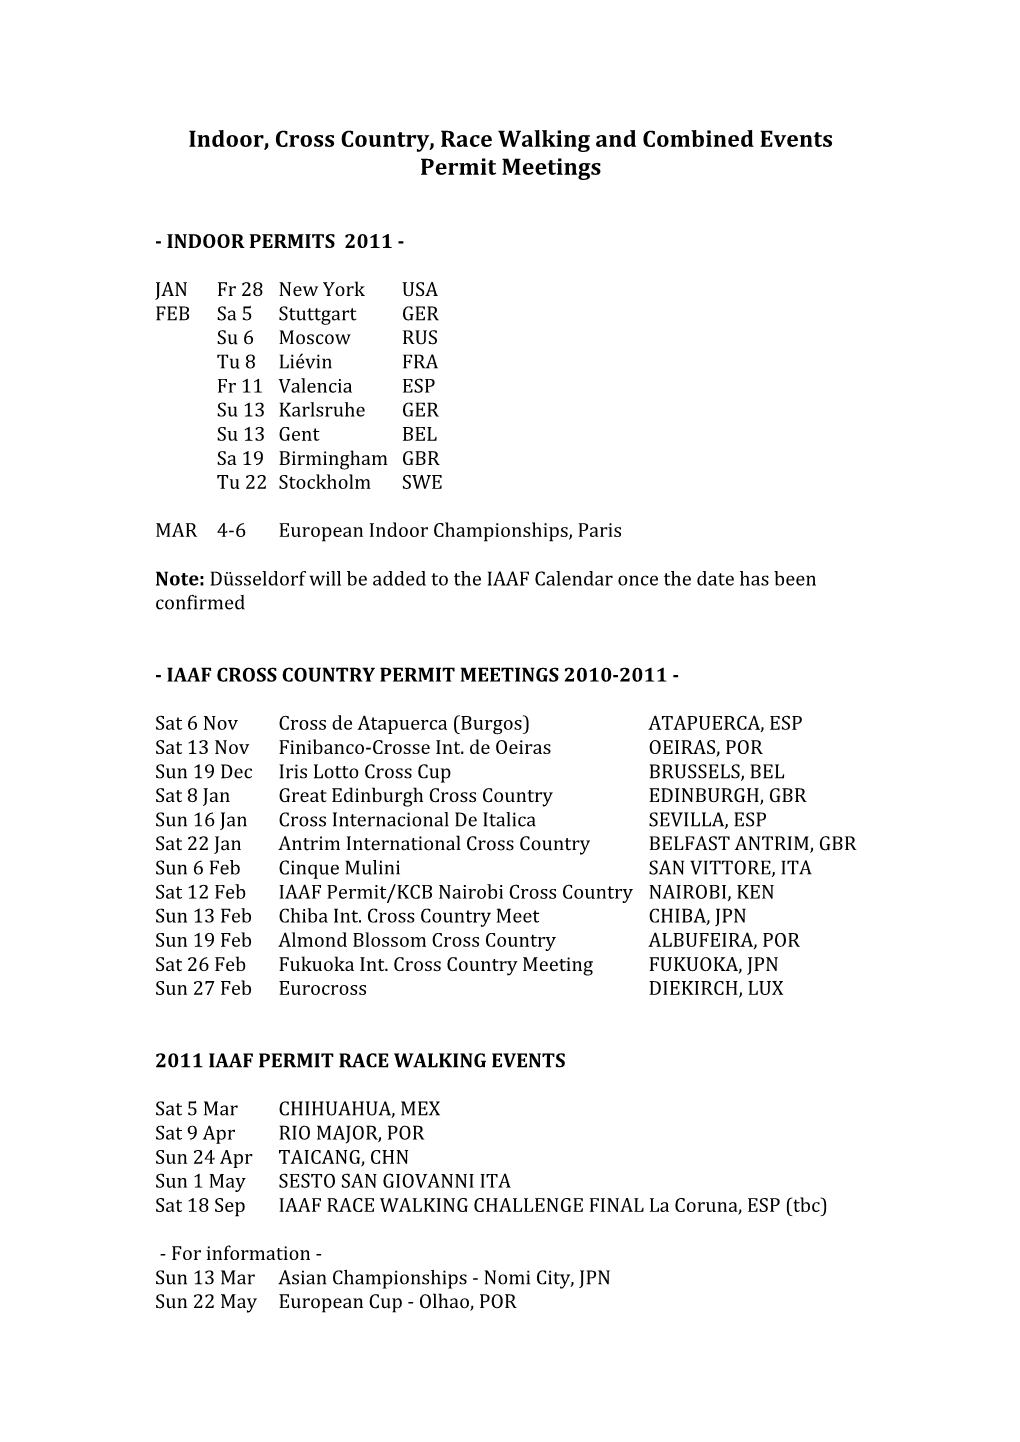 IAAF Permit Schedule 2011